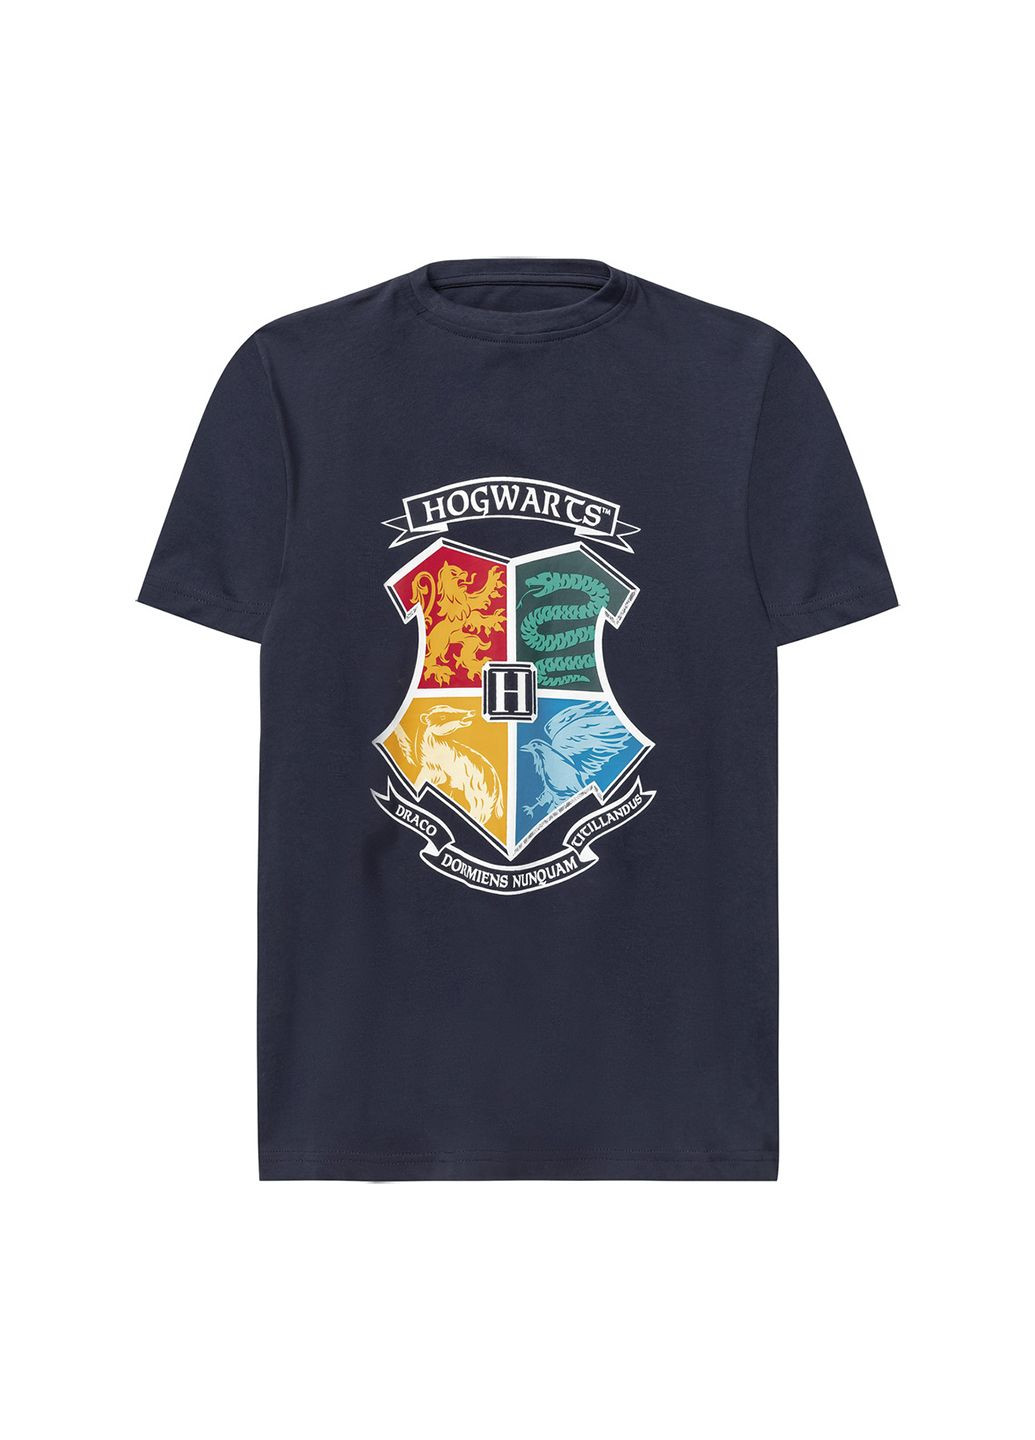 Комбинированная демисезонная футболка для мальчика комплект 2 шт Harry Potter